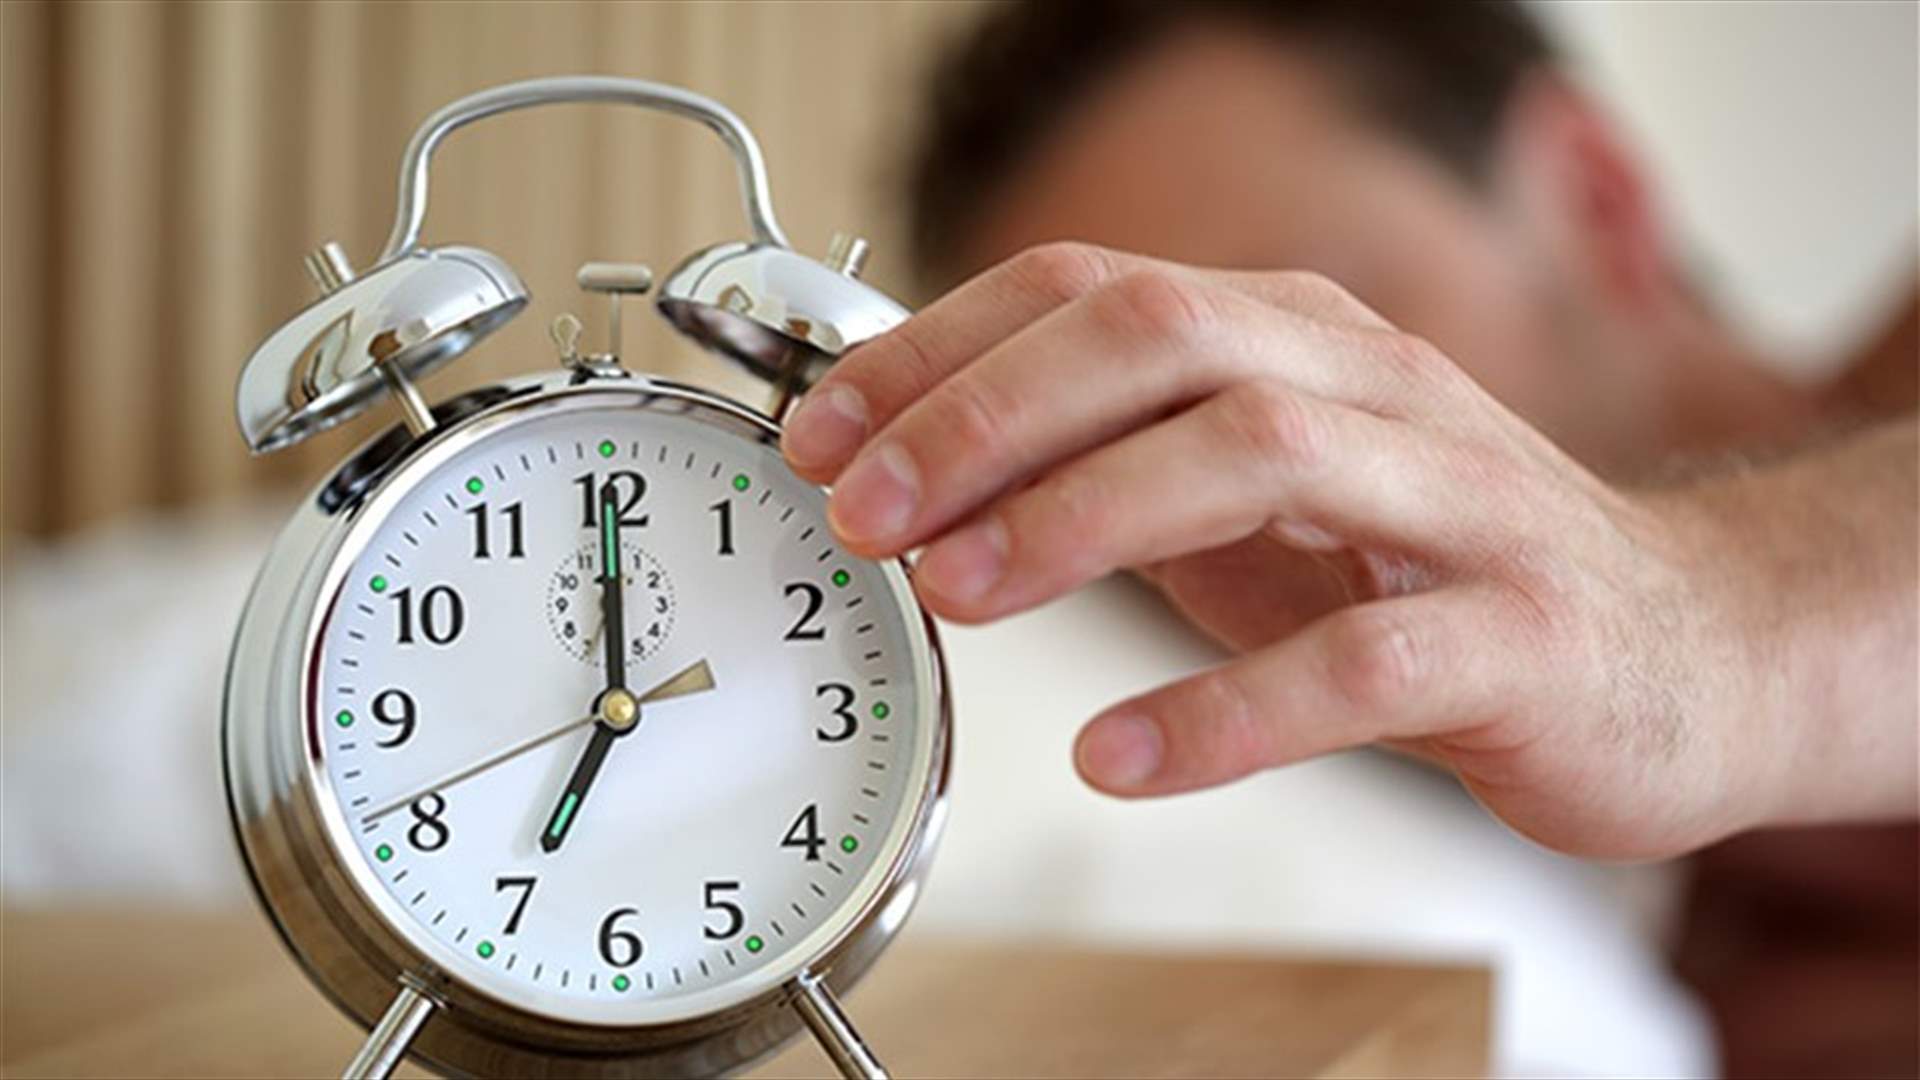 بعد موسم الأعياد والسهر... اتبعوا هذه النصائح لإعادة تنظيم ساعات نومكم!